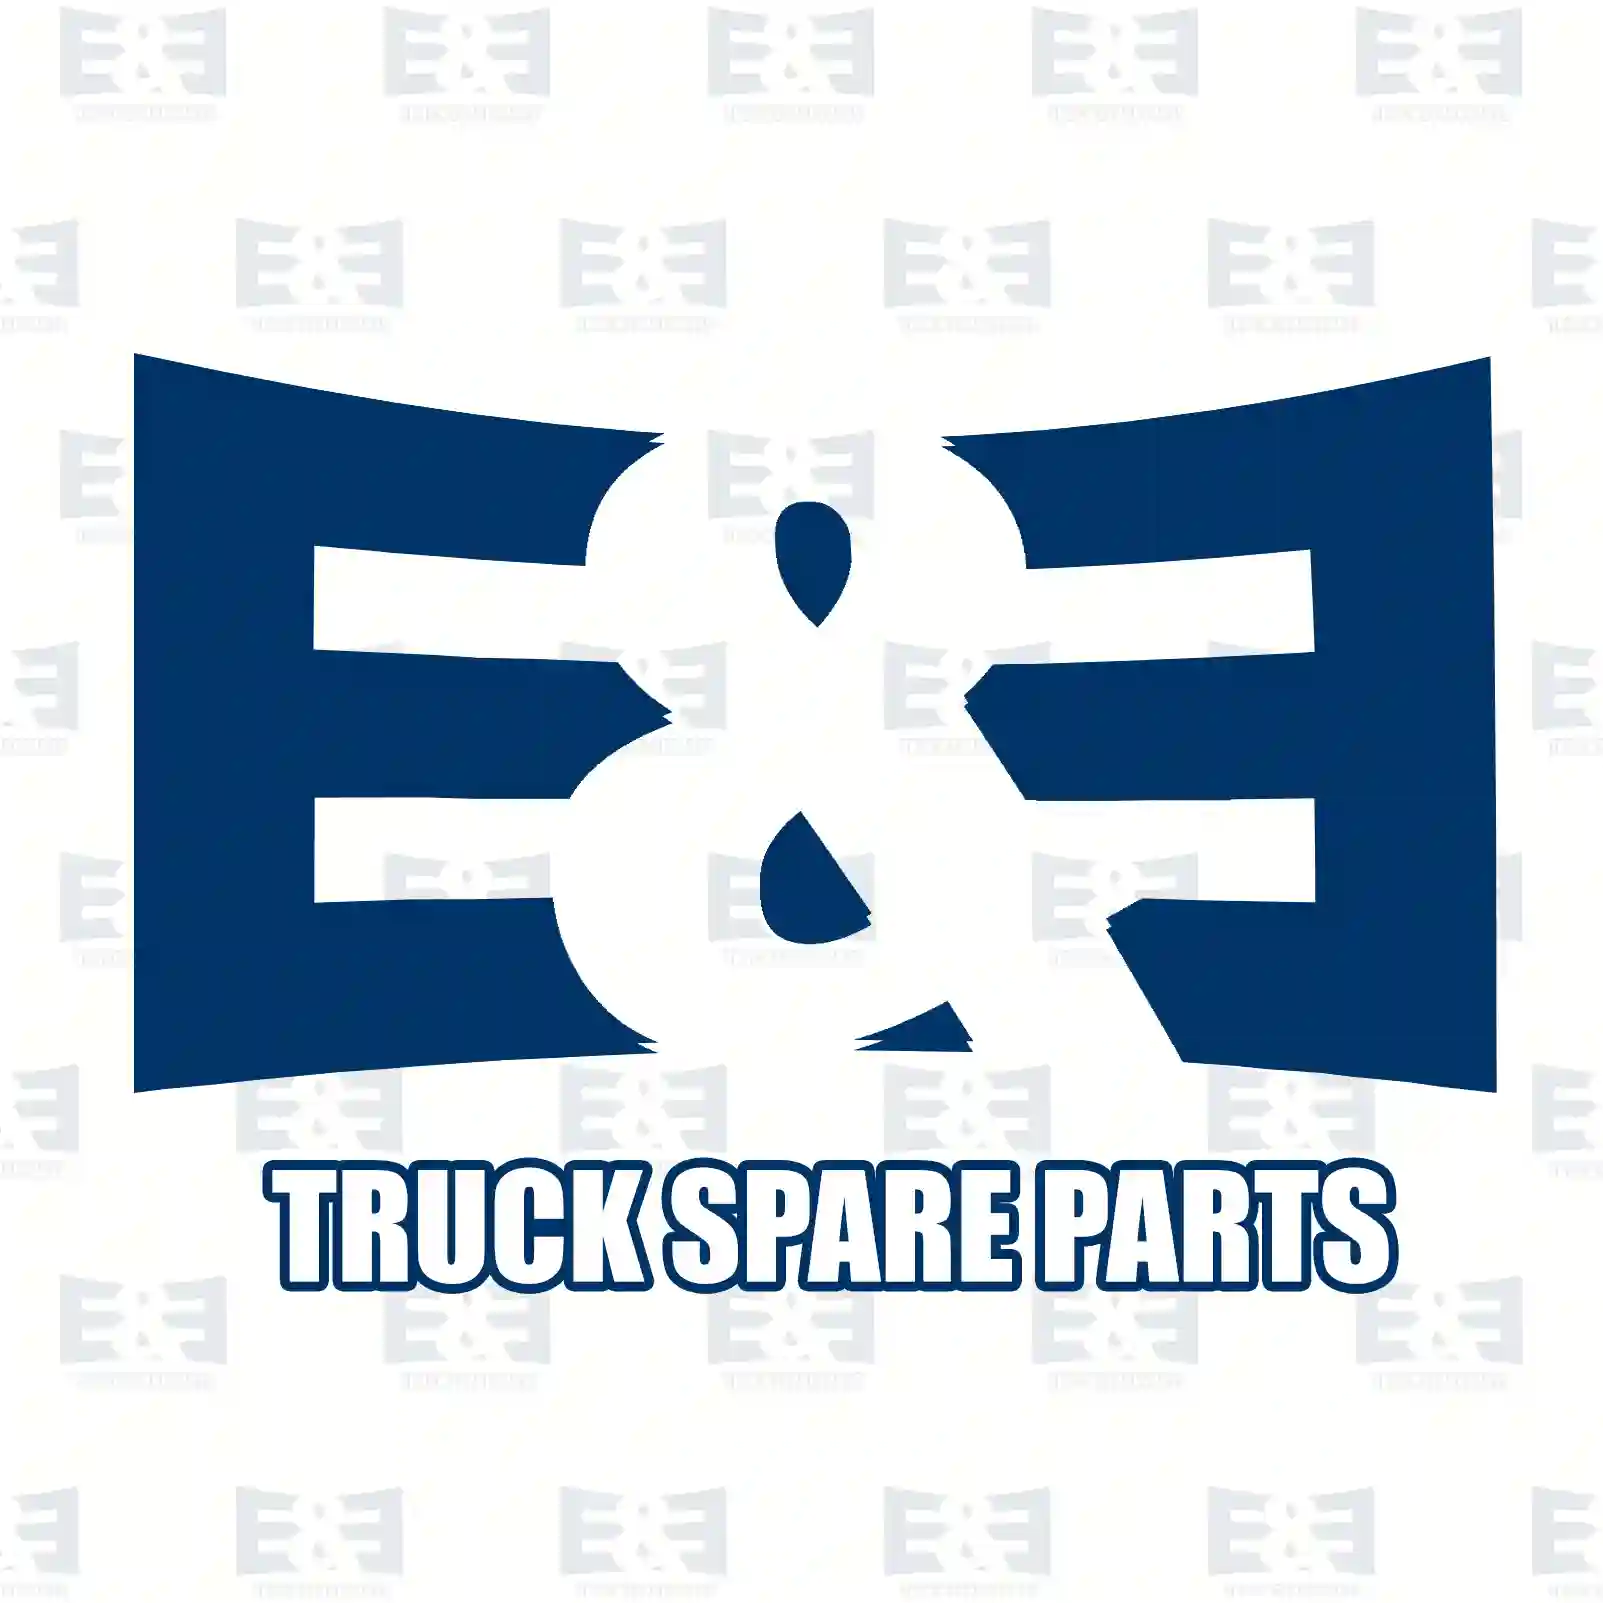 Propeller shaft, 2E2276049, 3C11-4K357-HB, 4521402 ||  2E2276049 E&E Truck Spare Parts | Truck Spare Parts, Auotomotive Spare Parts Propeller shaft, 2E2276049, 3C11-4K357-HB, 4521402 ||  2E2276049 E&E Truck Spare Parts | Truck Spare Parts, Auotomotive Spare Parts